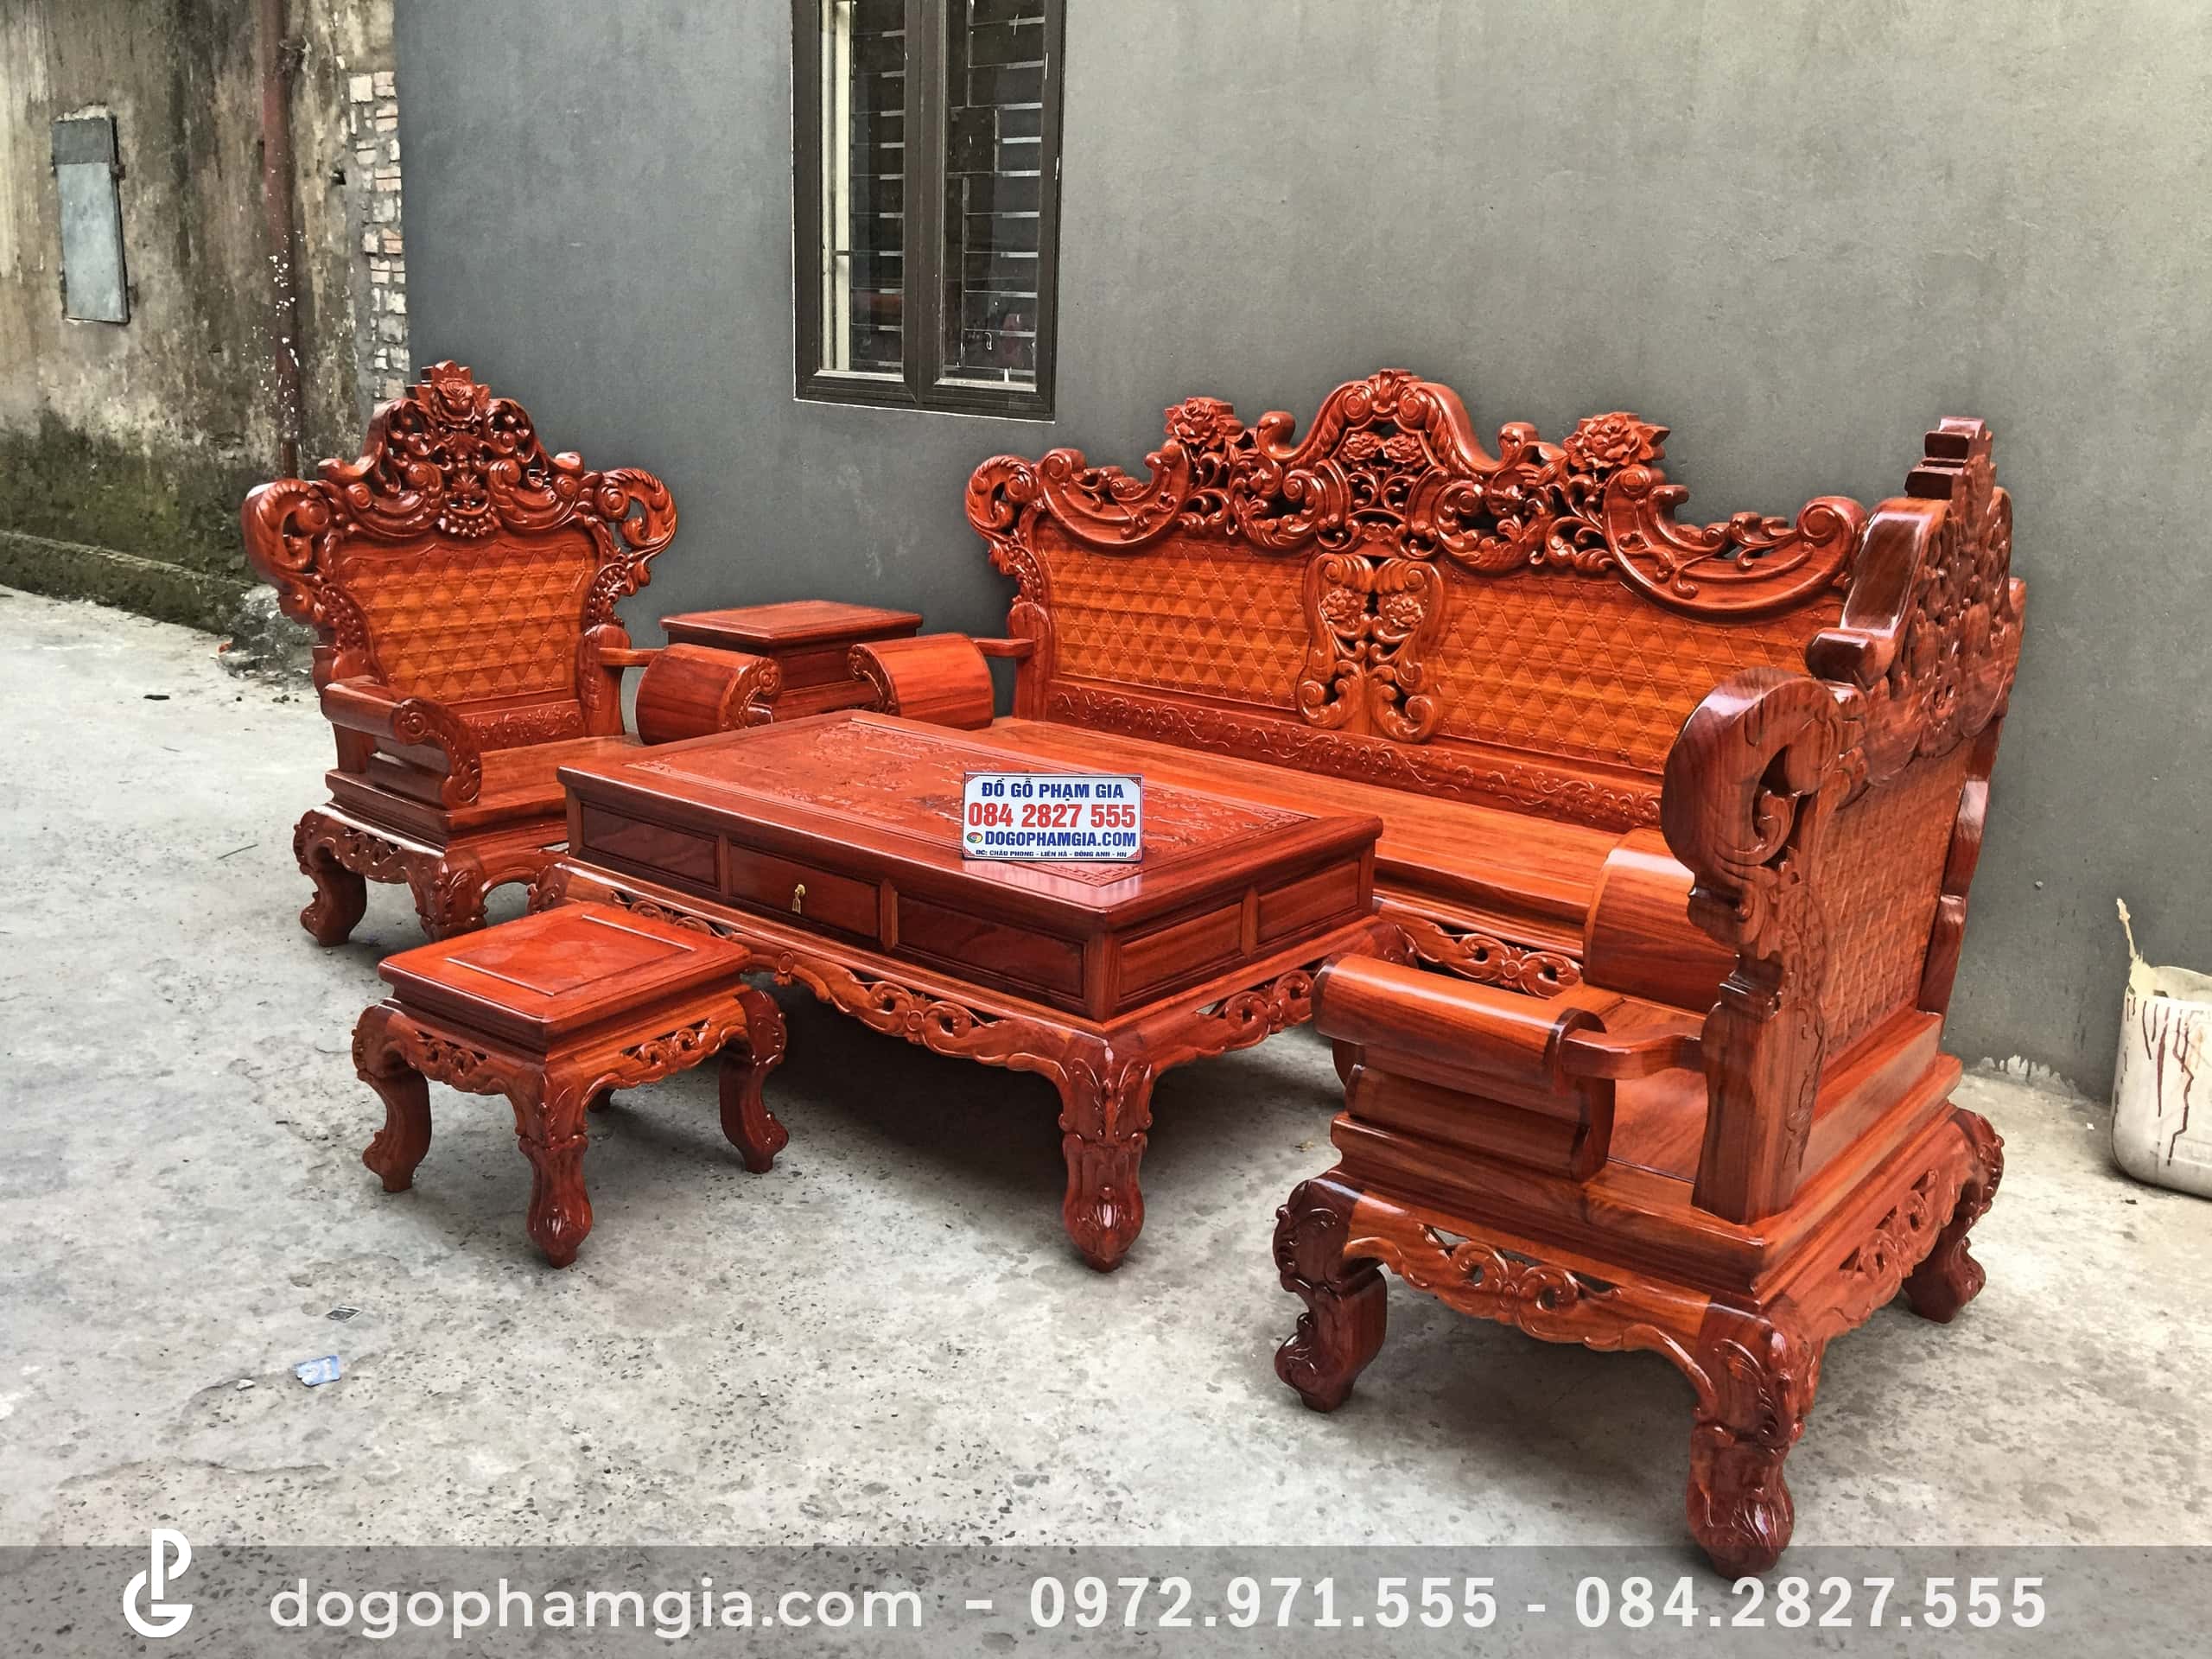 Bộ bàn ghế Hoàng Gia 6 món gỗ hương đỏ (Anh Hướng, Bắc Ninh) - Đồ ...